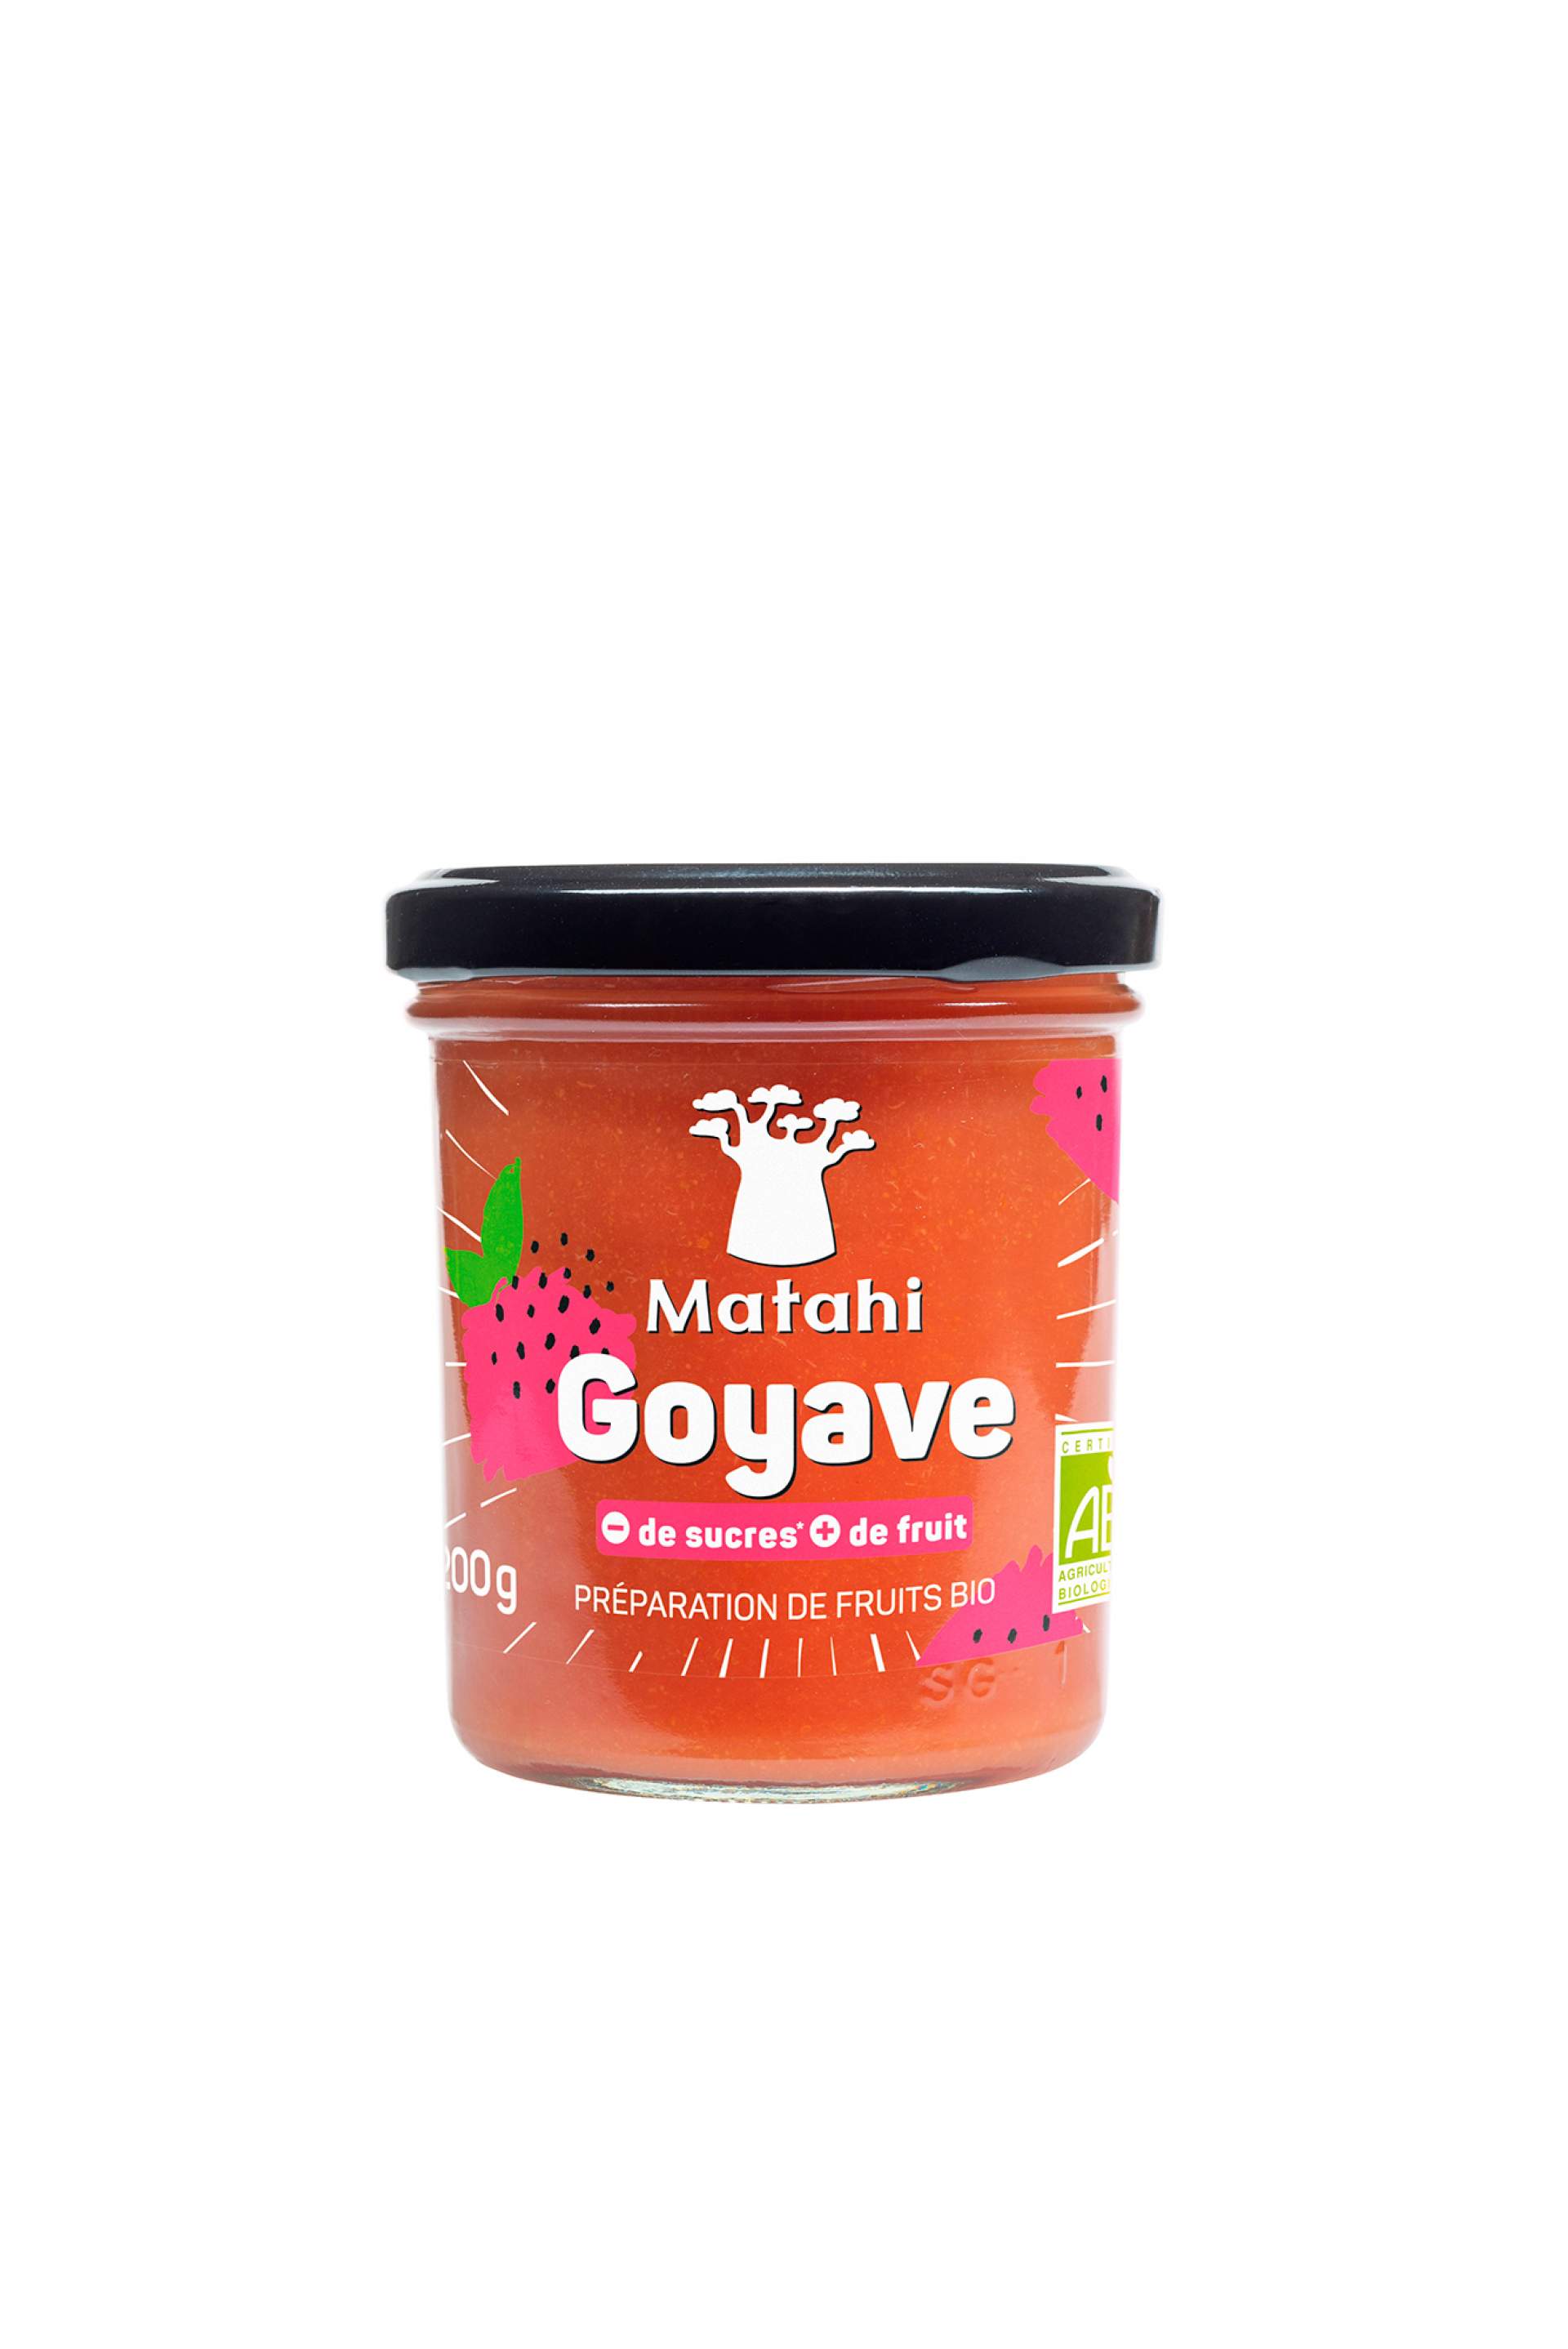 Création du packaging de la préparation goyave